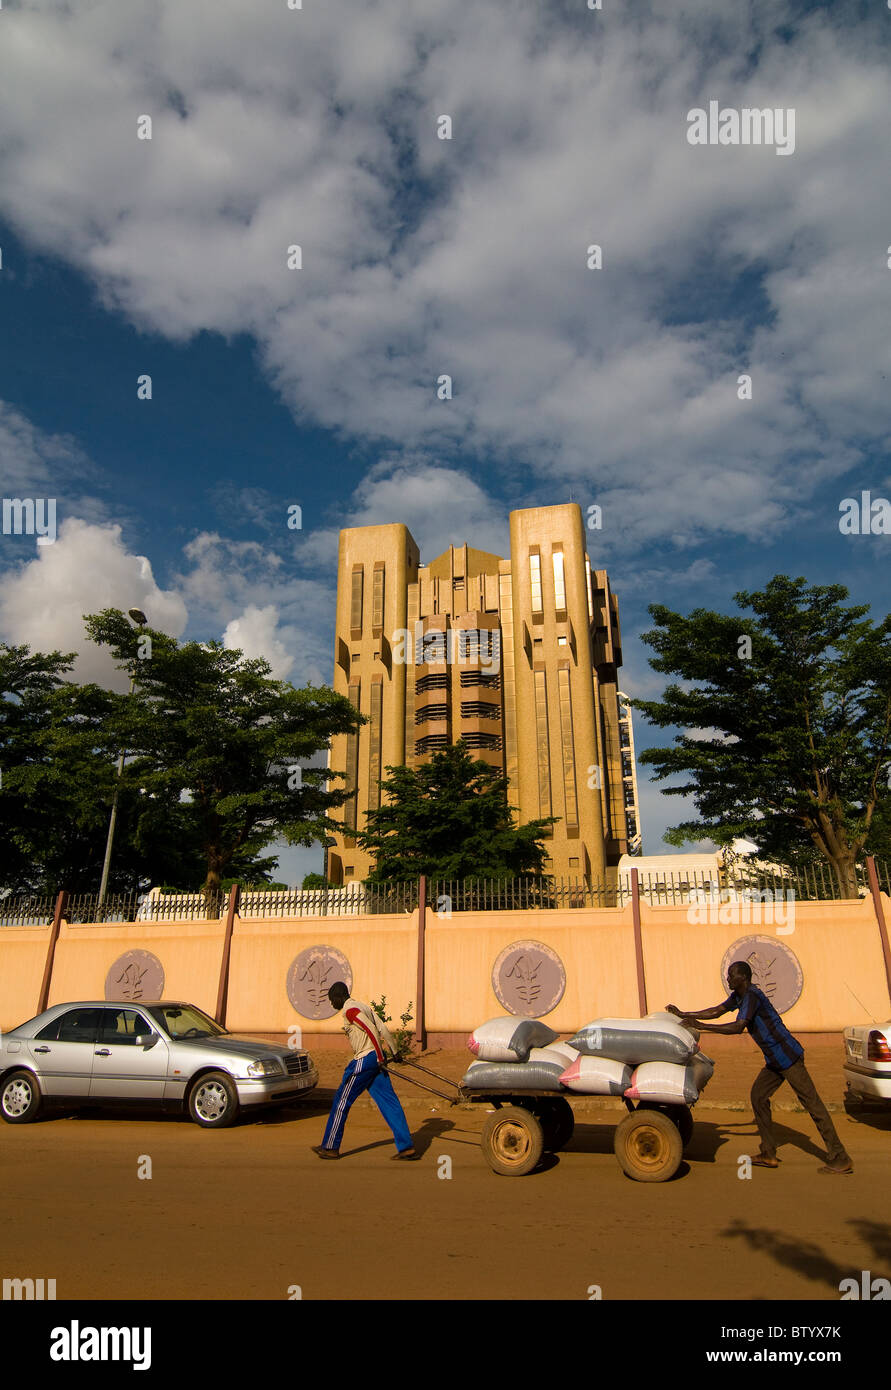 The Central bank of Burkina Faso in downtown Ouagadougou. Stock Photo